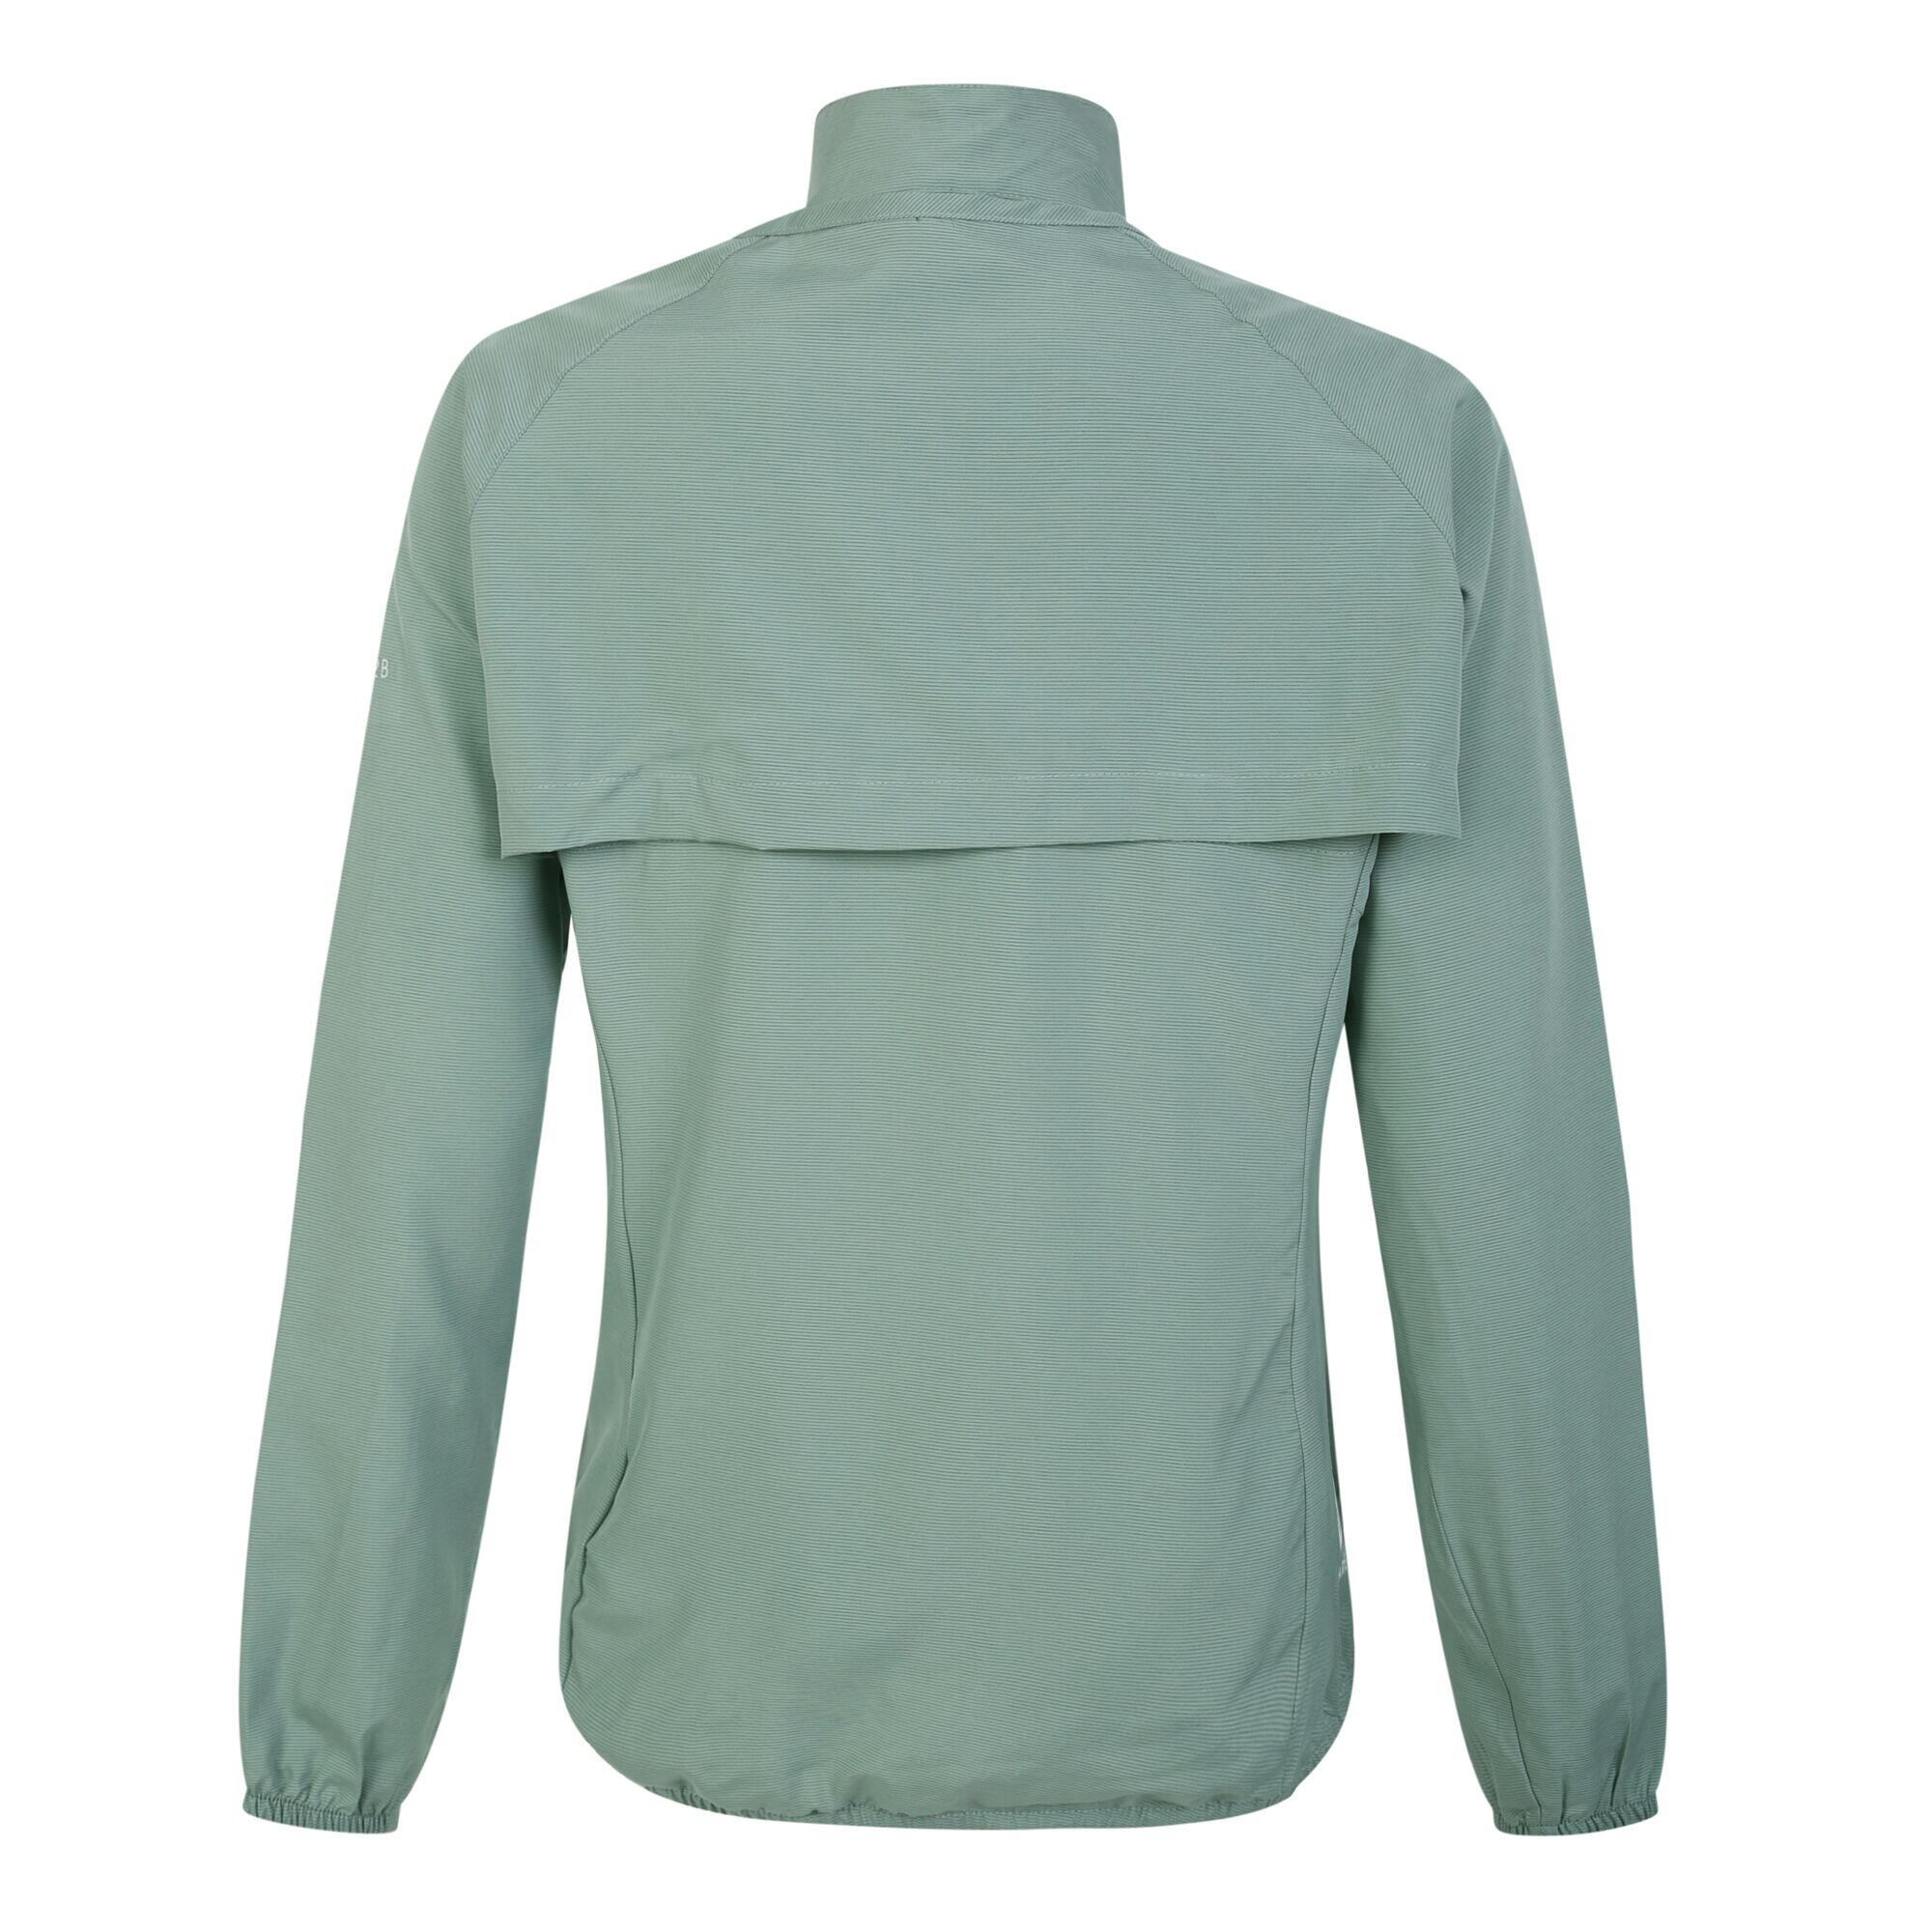 Womens/Ladies Rebound Jacket (Lilypad Green) 2/4